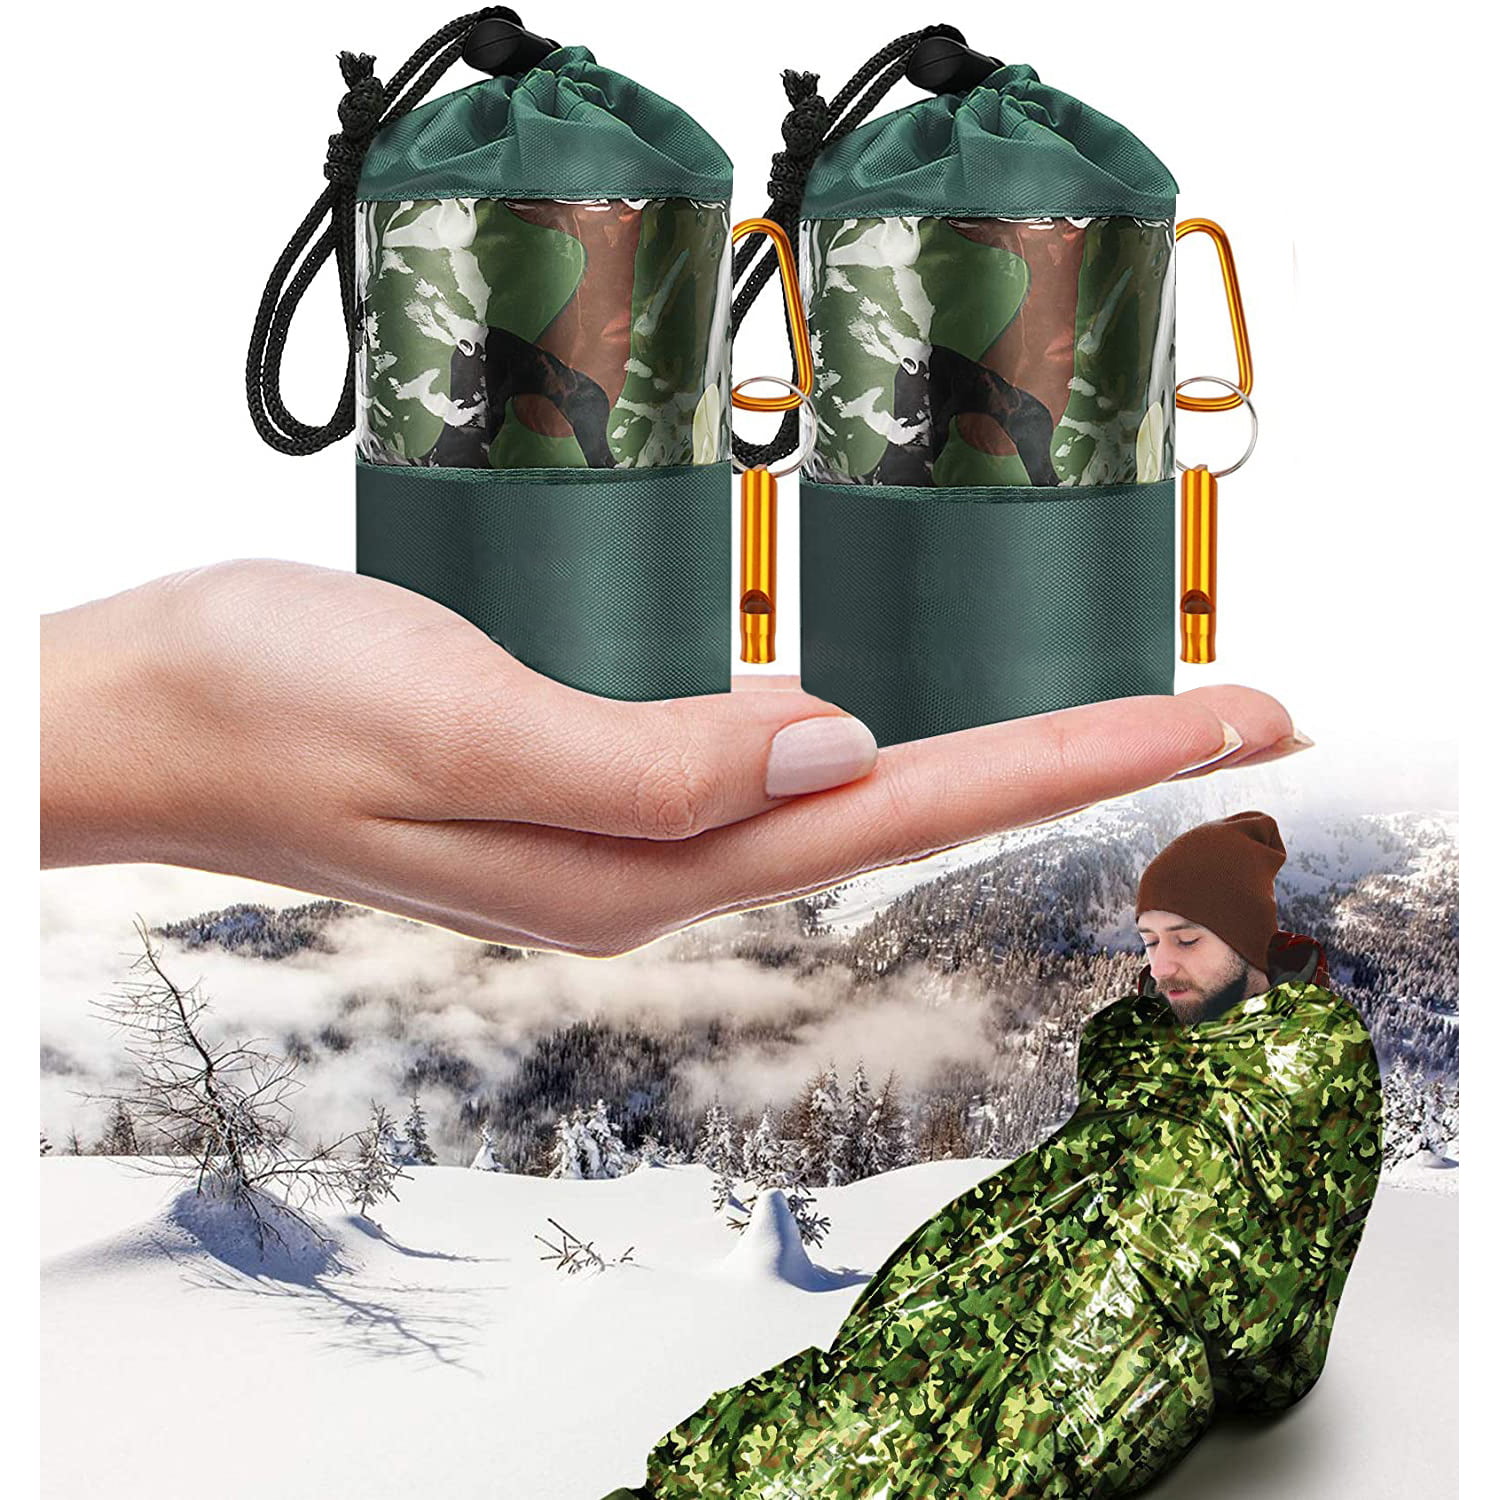 1pcs camo waterproof Emergency survival Blanket thermal aid camping Hiking s0u3 